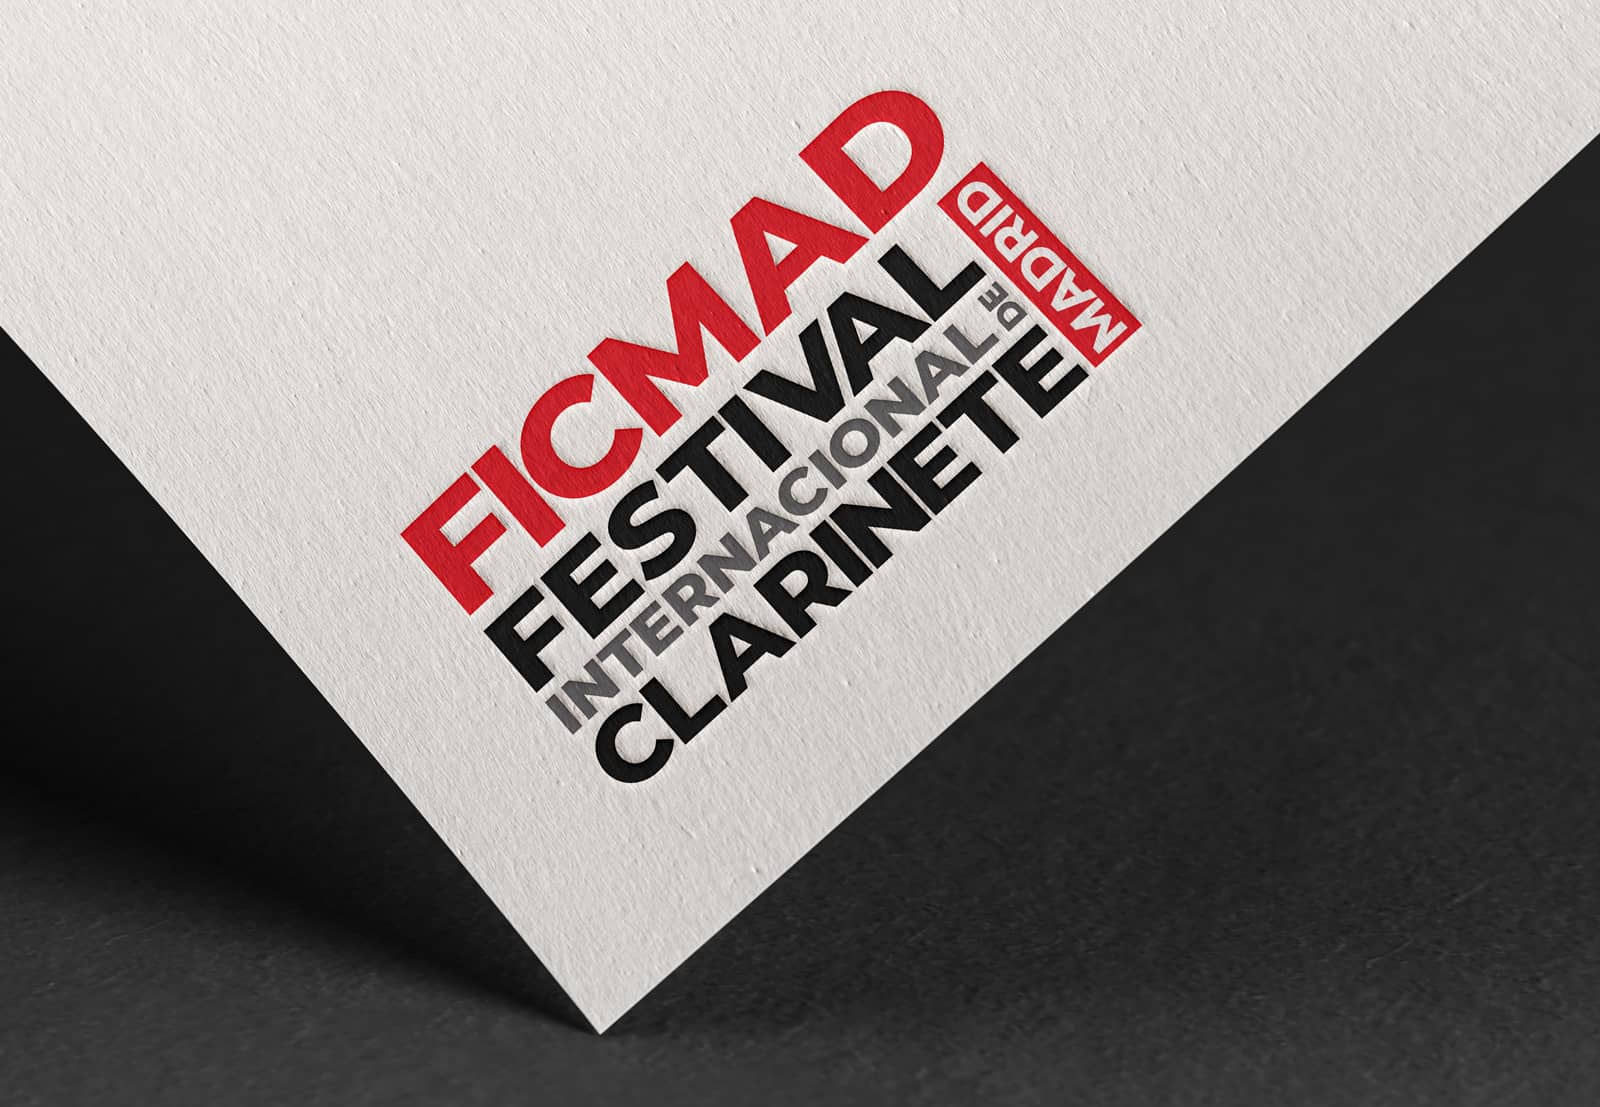 Logotipo FICMAD en papel branding por The Acctitude diseño web